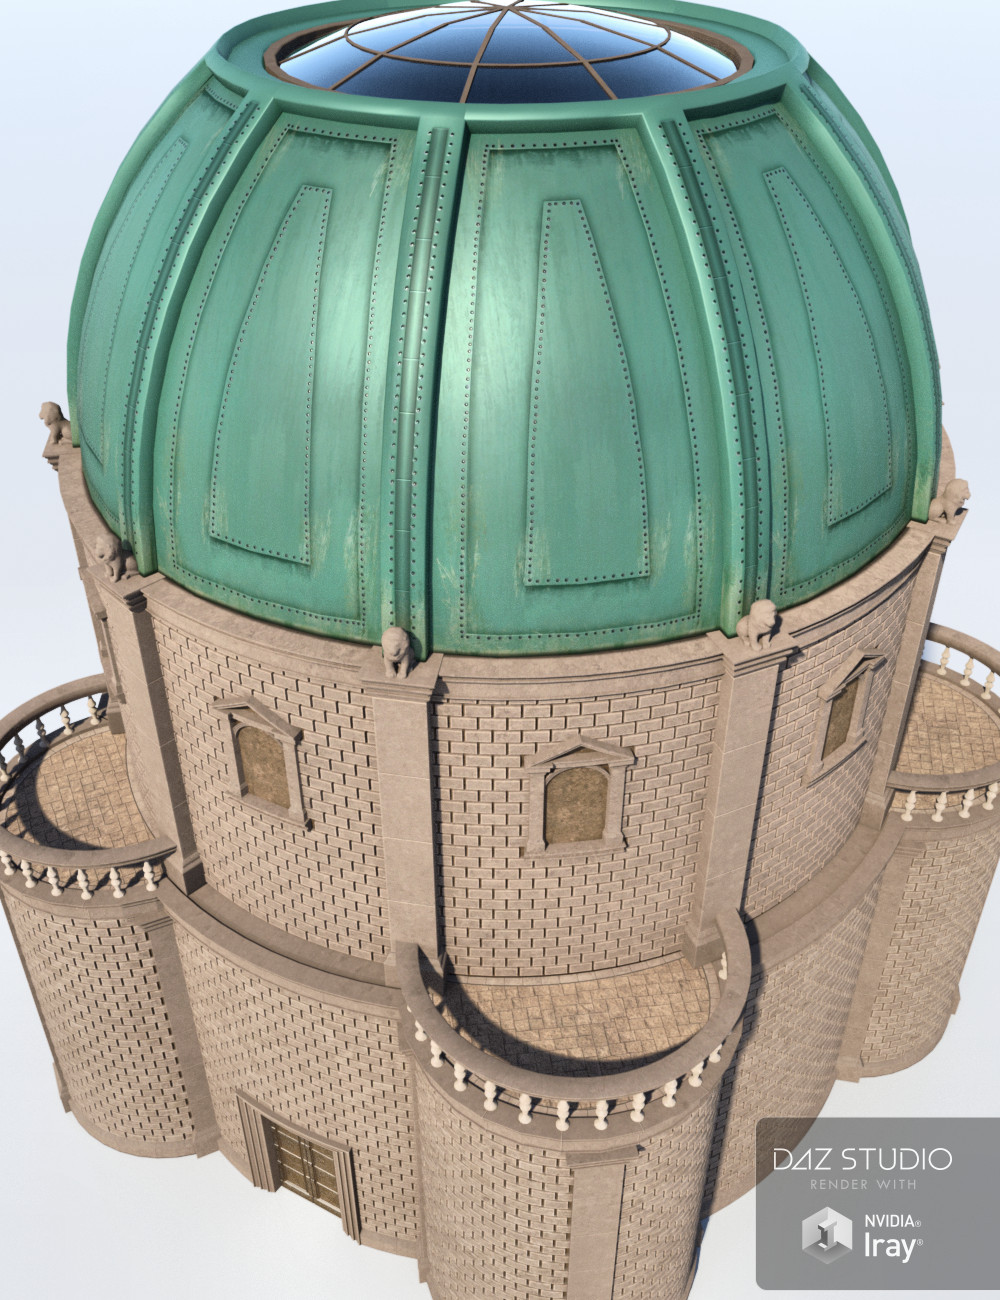 Ash Tree Mausoleum by: Merlin Studios, 3D Models by Daz 3D